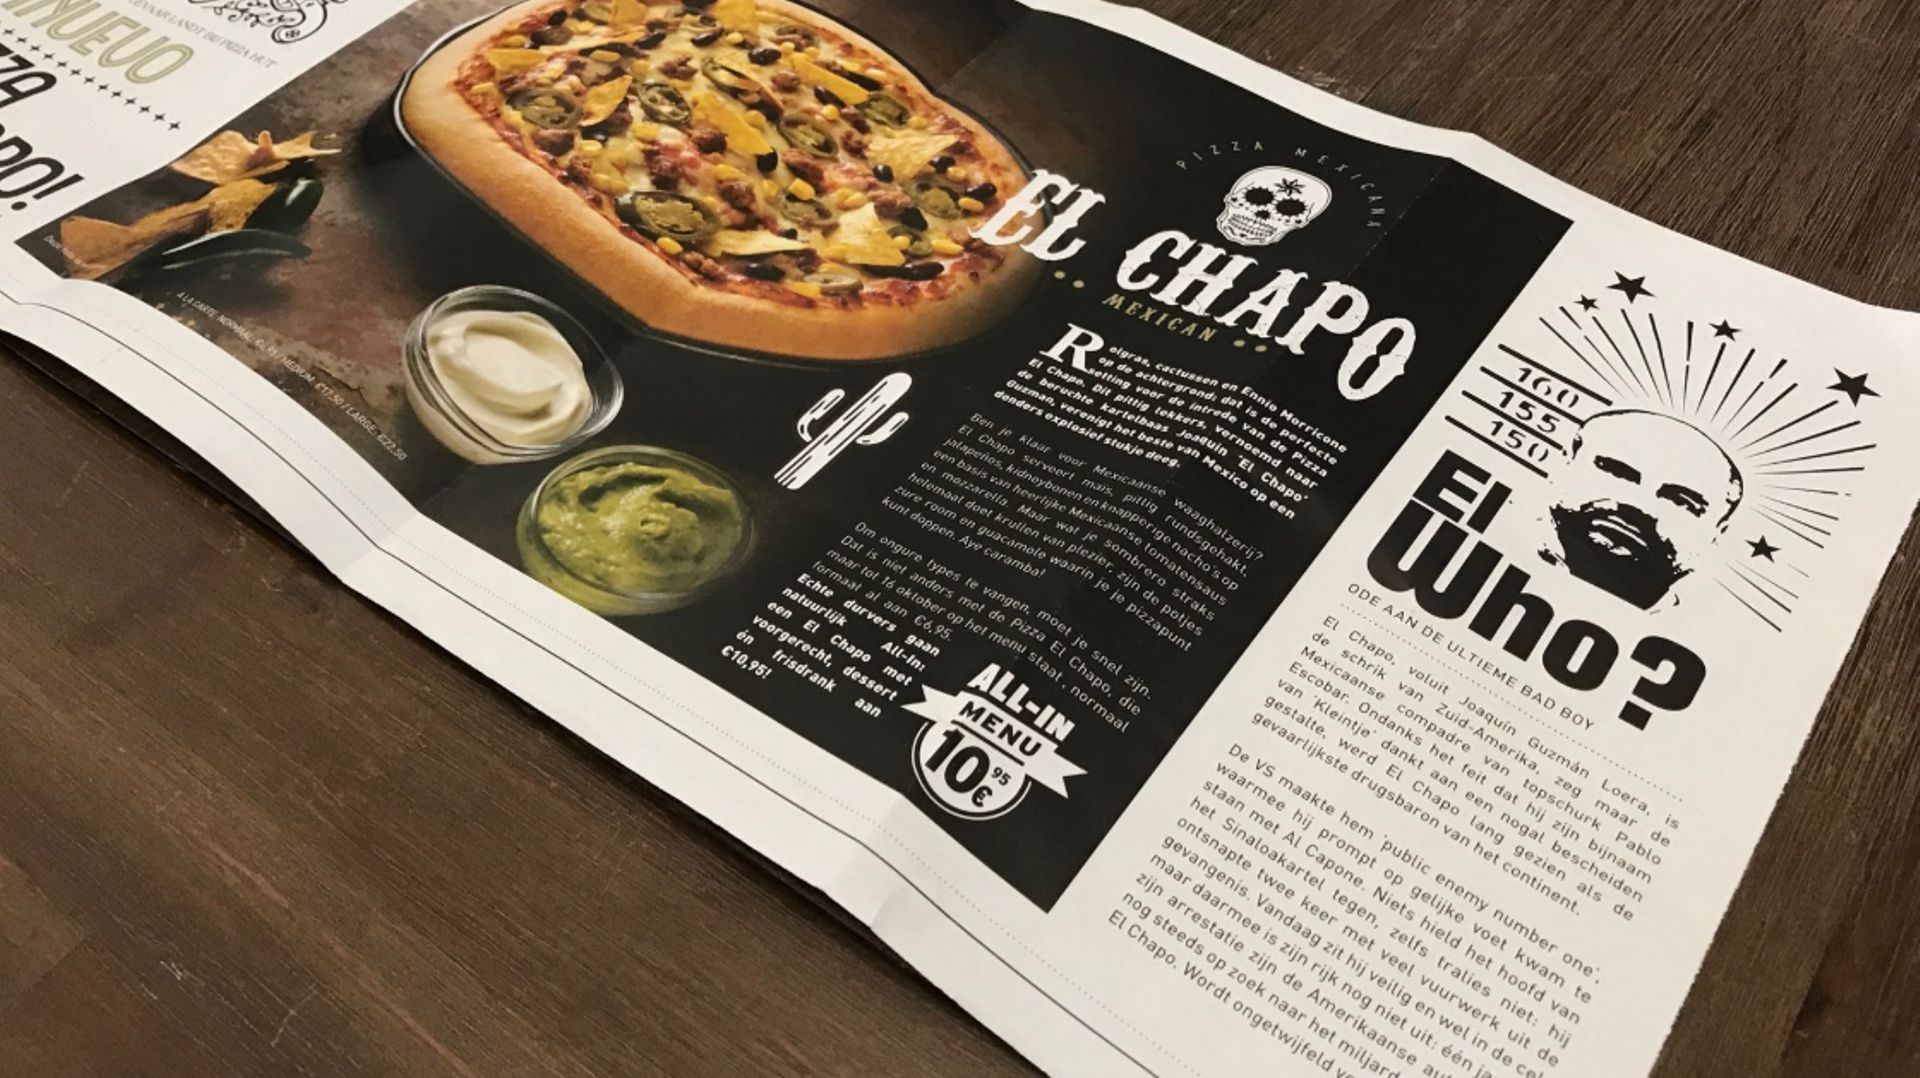 Publicité pour la pizza El Chapo